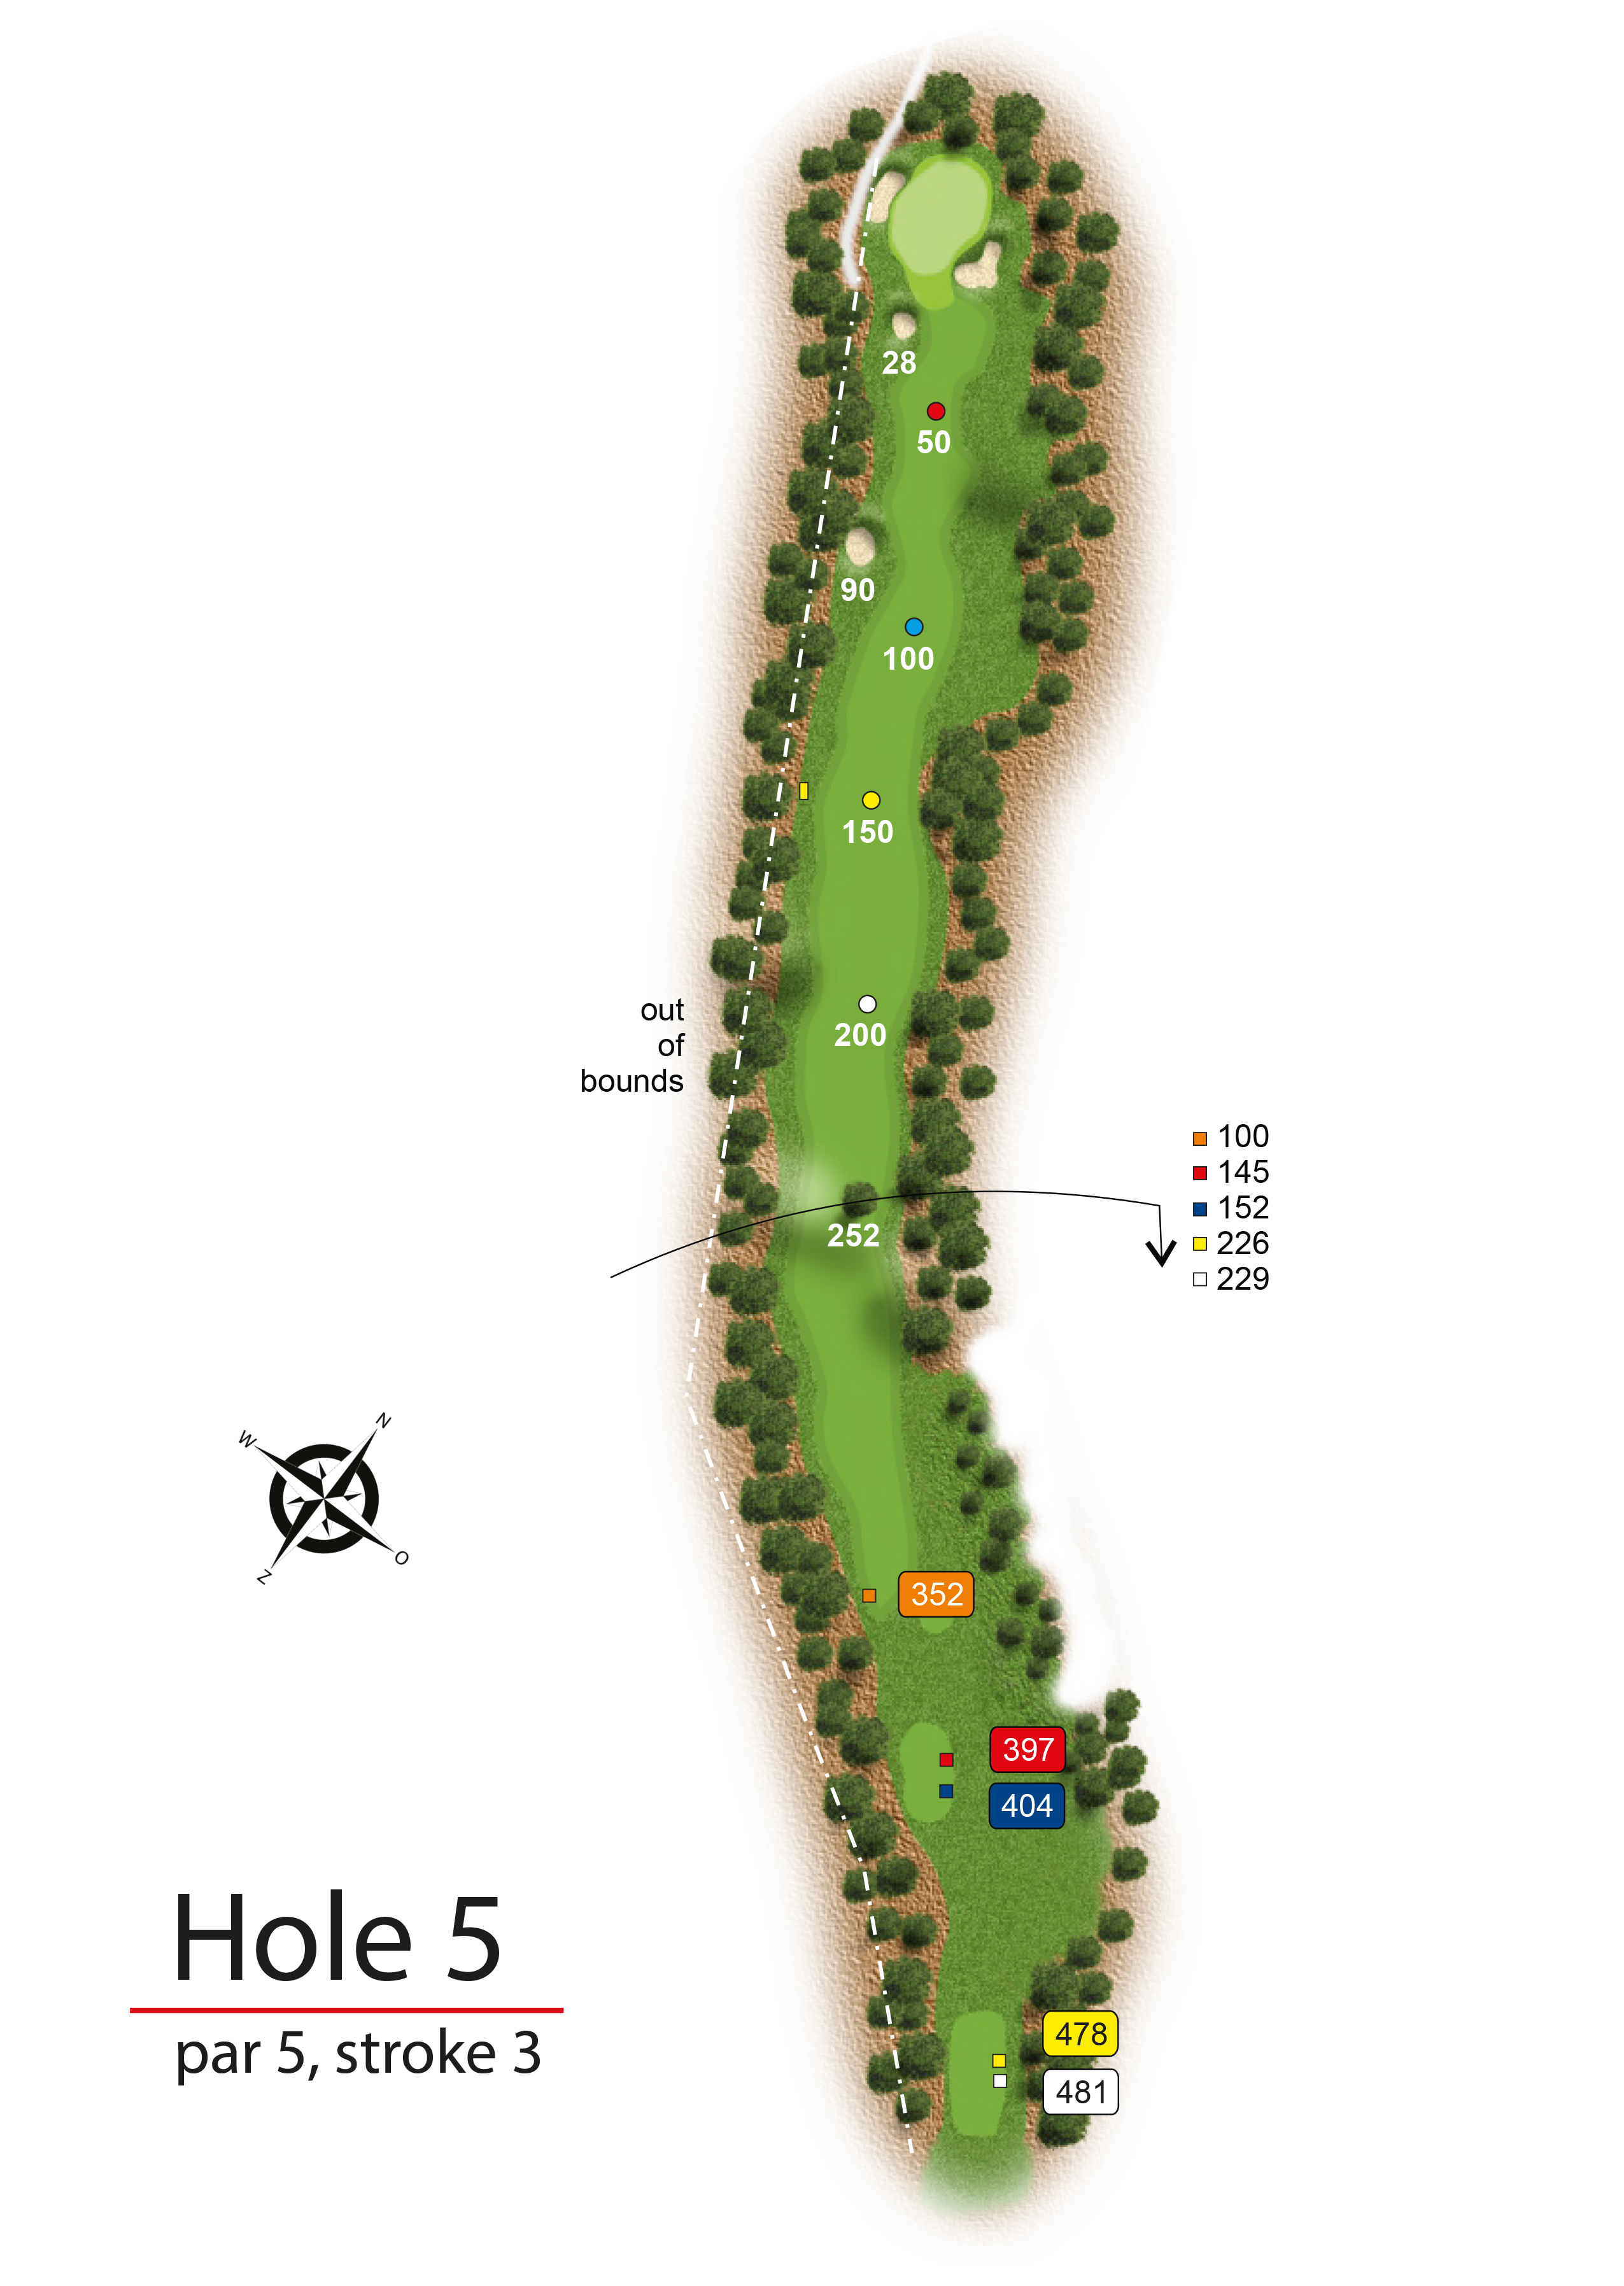 Hole 5 - simple